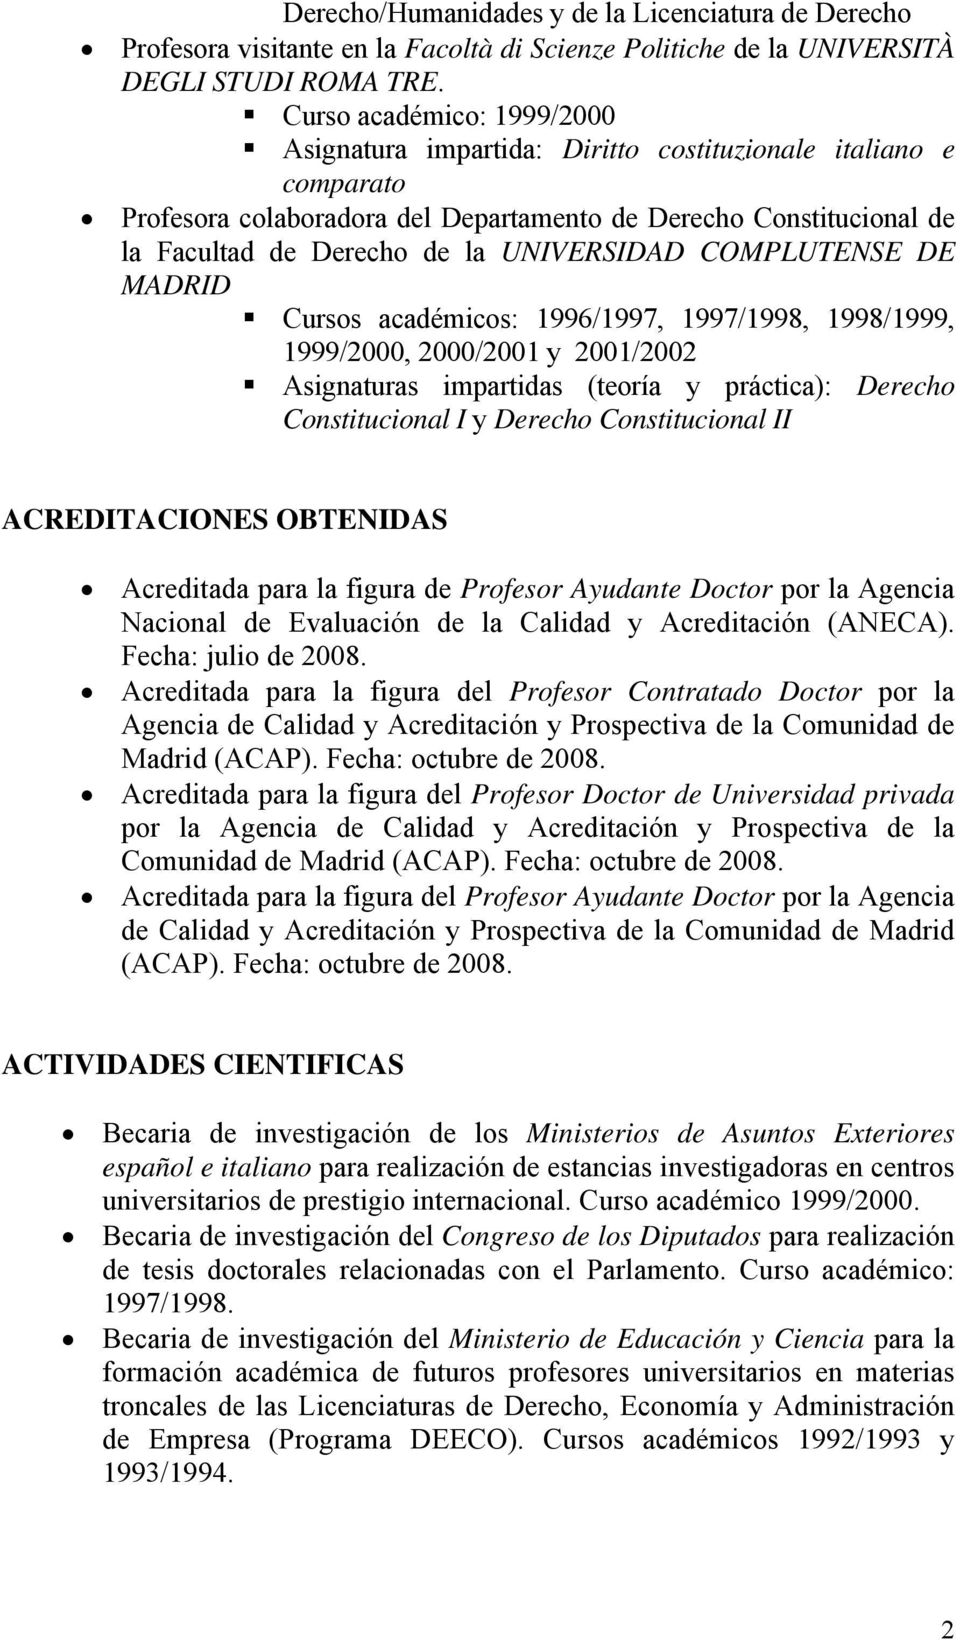 UNIVERSIDAD COMPLUTENSE DE MADRID Cursos académicos: 1996/1997, 1997/1998, 1998/1999, 1999/2000, 2000/2001 y 2001/2002 Asignaturas impartidas (teoría y práctica): Derecho Constitucional I y Derecho